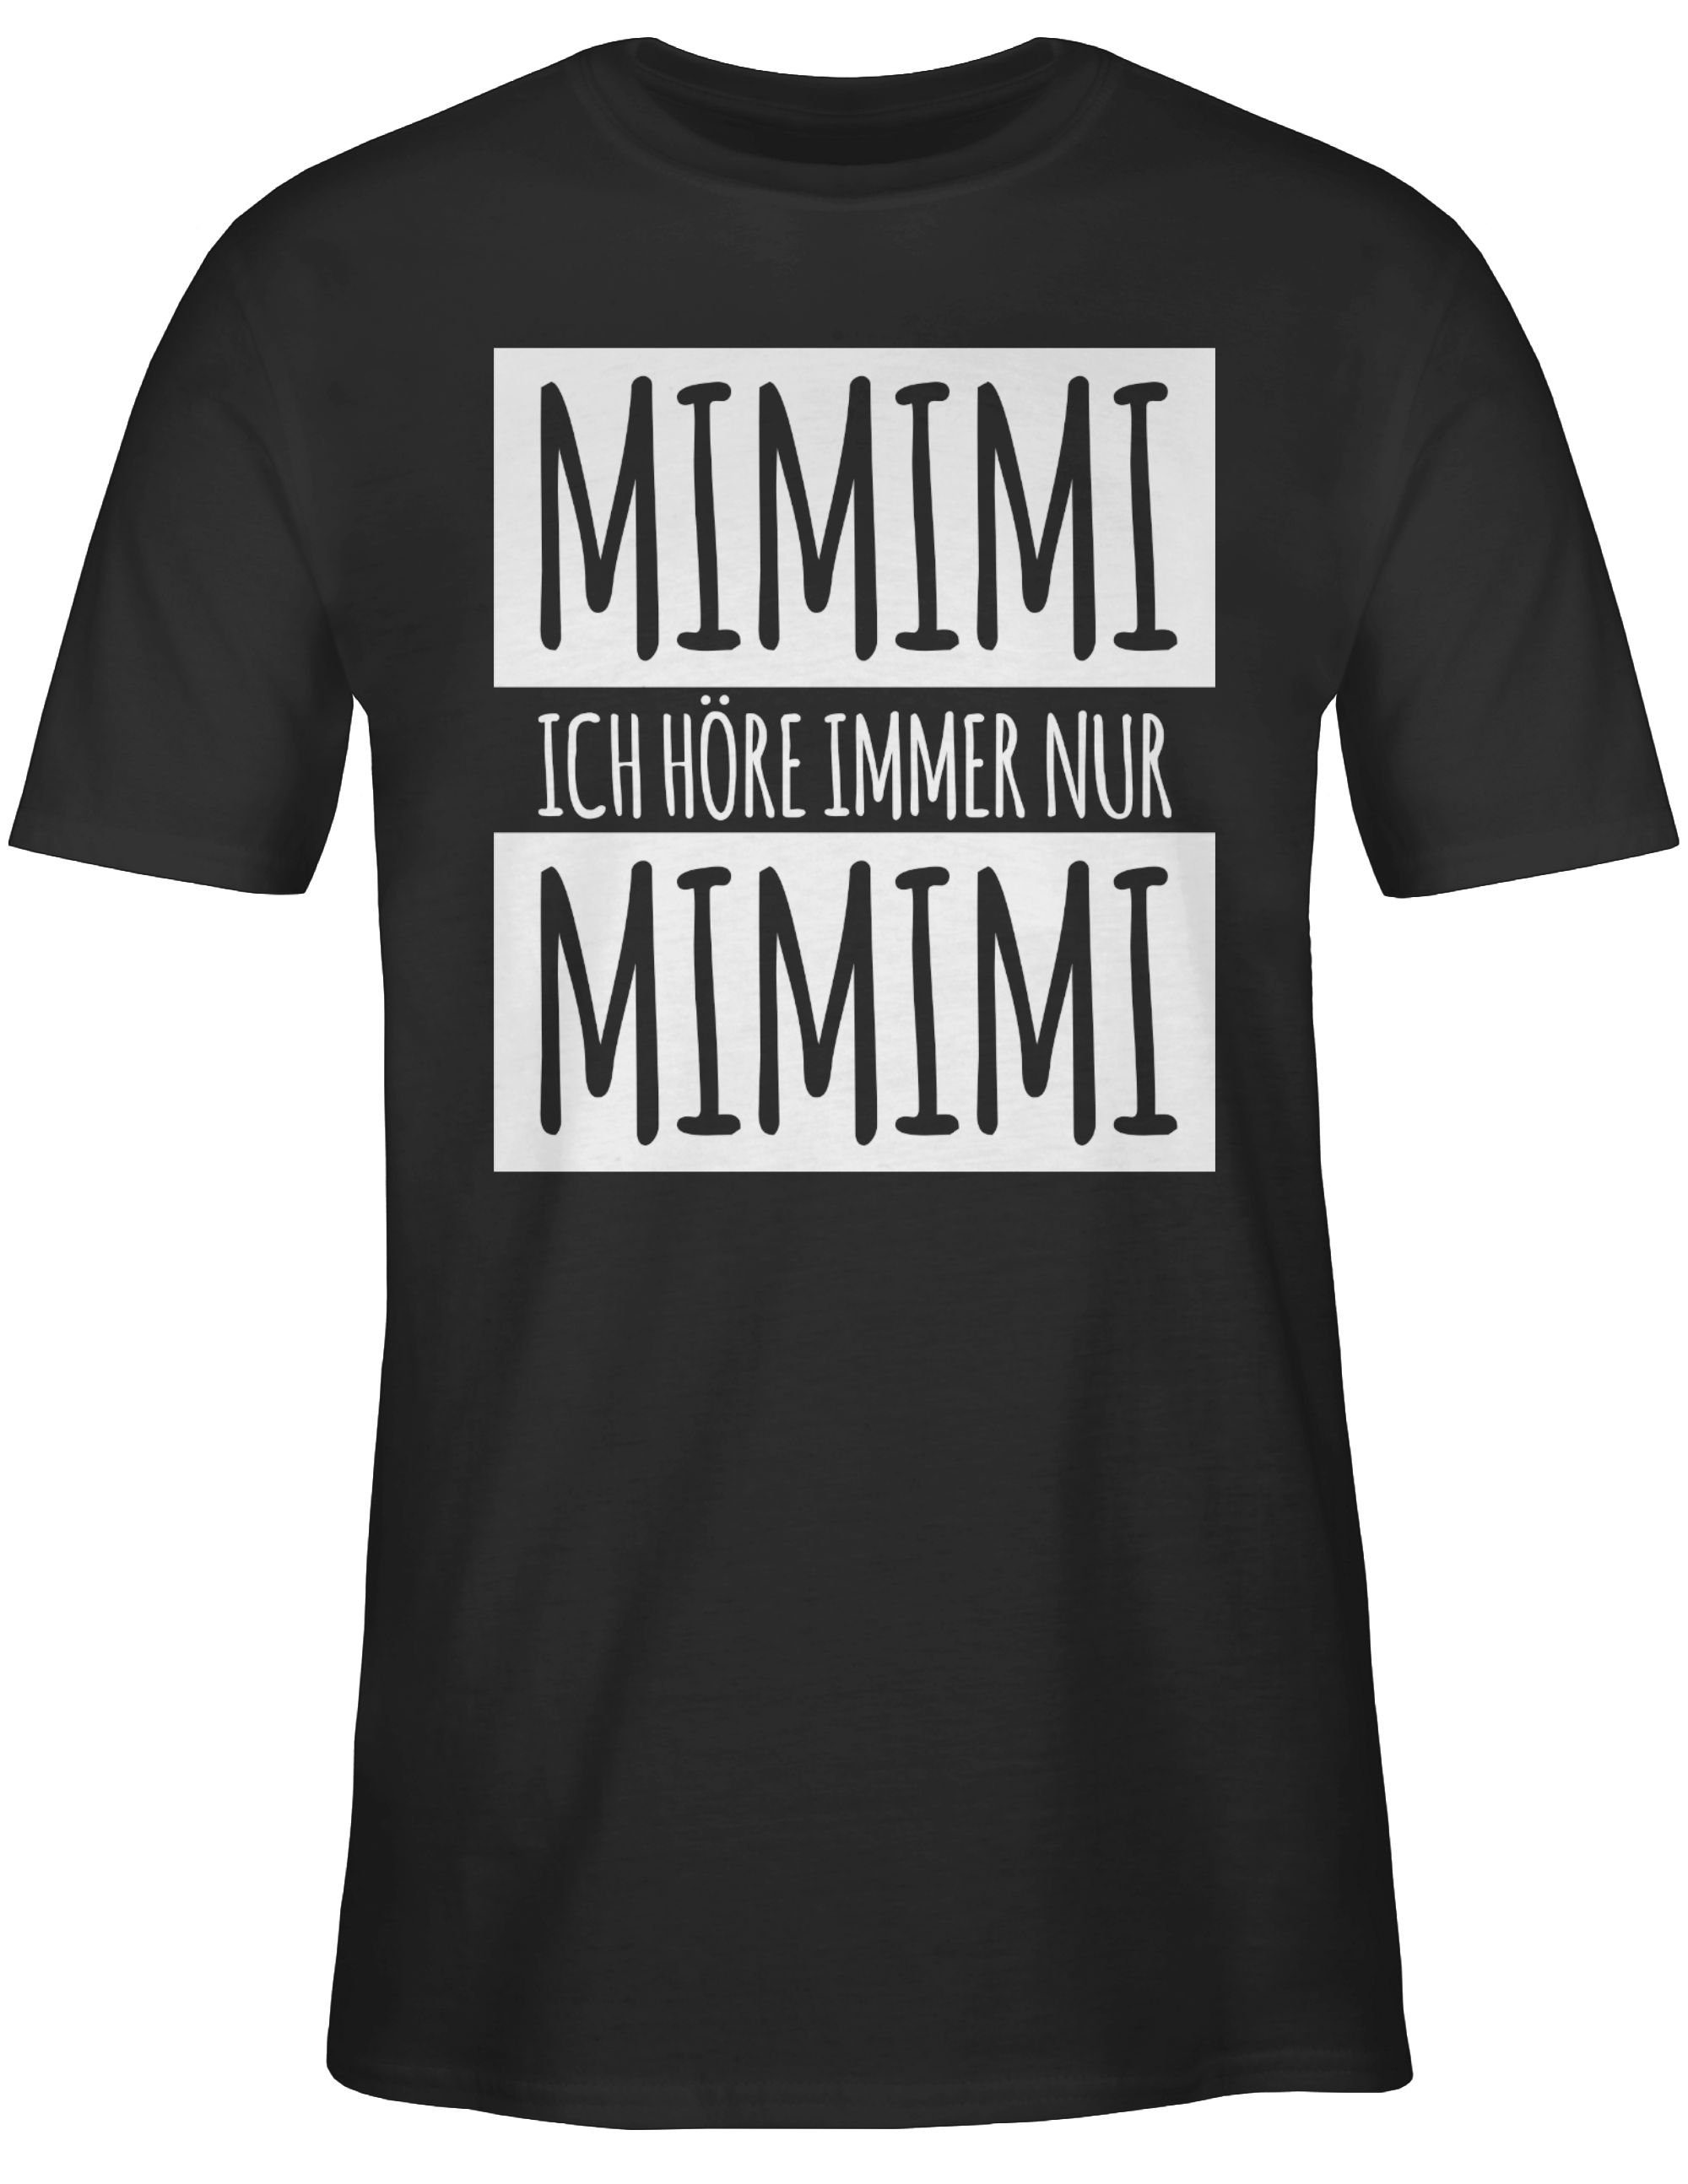 Mimimi immer Statement T-Shirt Schwarz Shirtracer höre 01 Sprüche nur Weiss Ich